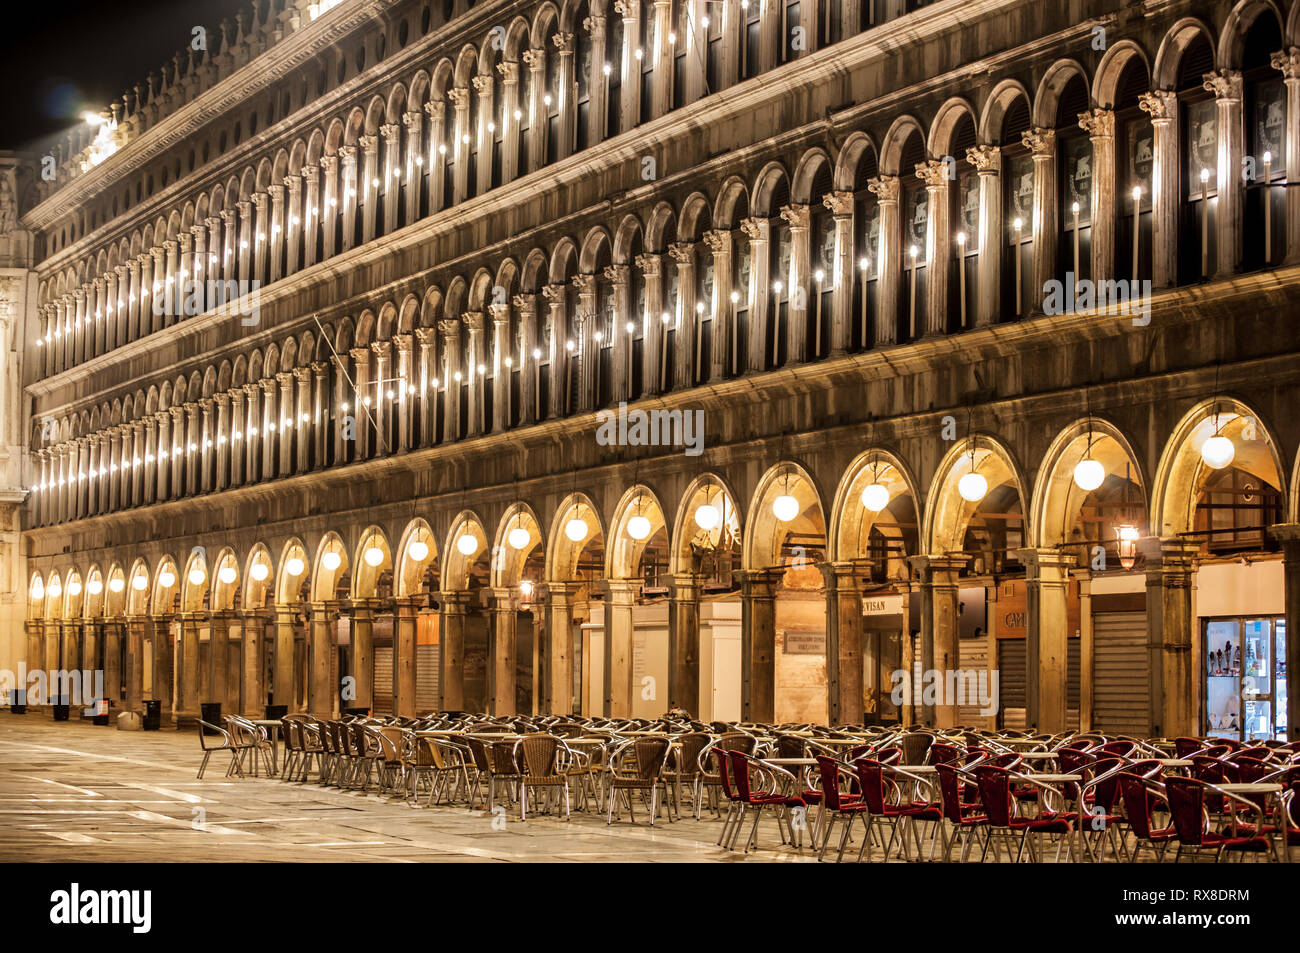 Chaises et tables sur la piazza San Marco à Venise Italie nuit Banque D'Images